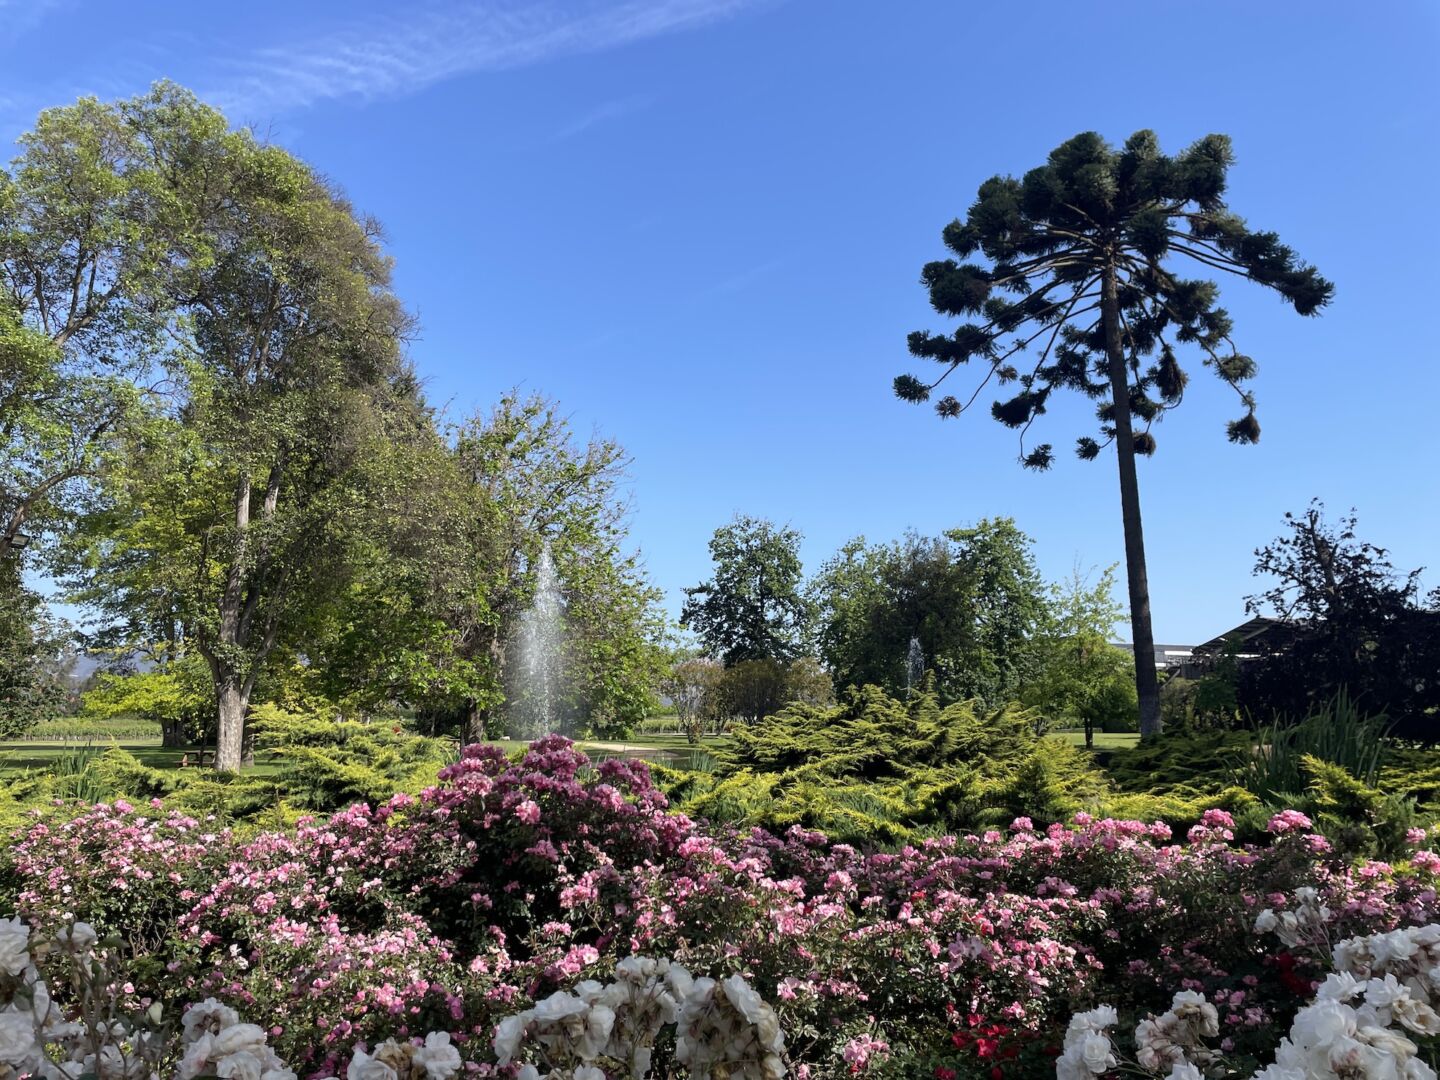 Uma foto da paisagem com muitas flores rosas e brancas no primeiro plano, árvores verdes no segundo plano e o céu bem azul.